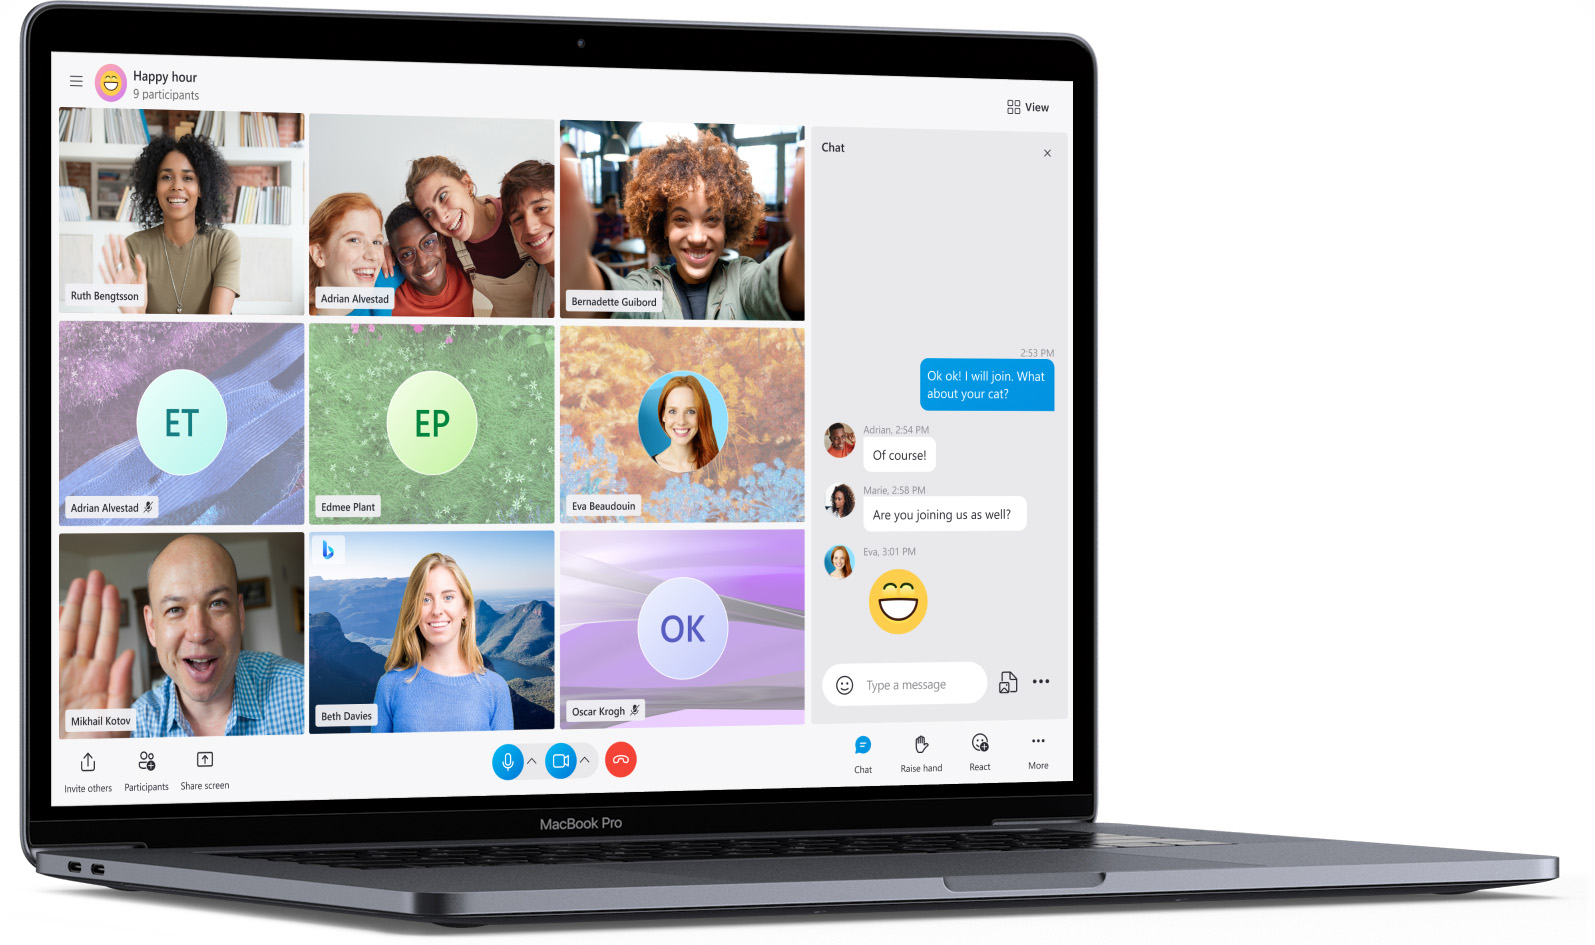 Marketing image showcasing Skype on Apple silicon MacBook Pro